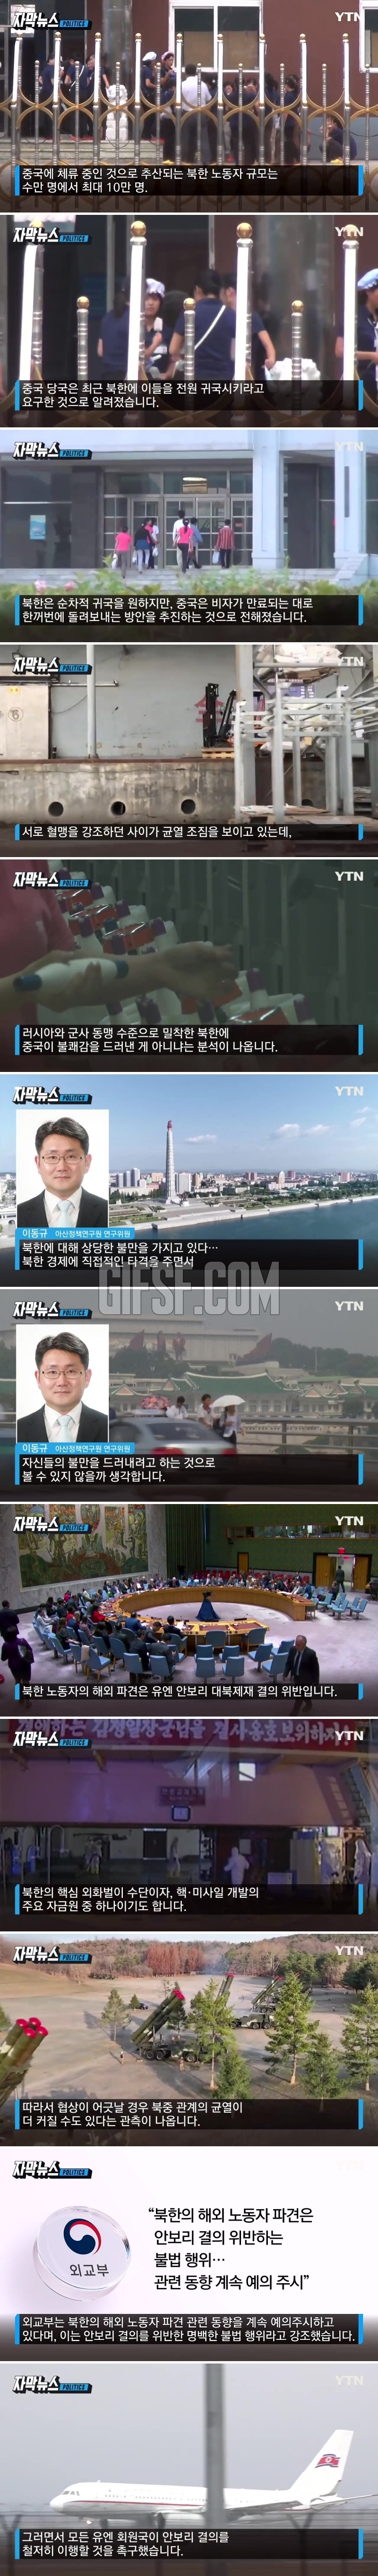 김정은 ',돈줄', 끊길 위기.',혈맹', 中의 날벼락 통보.jpg